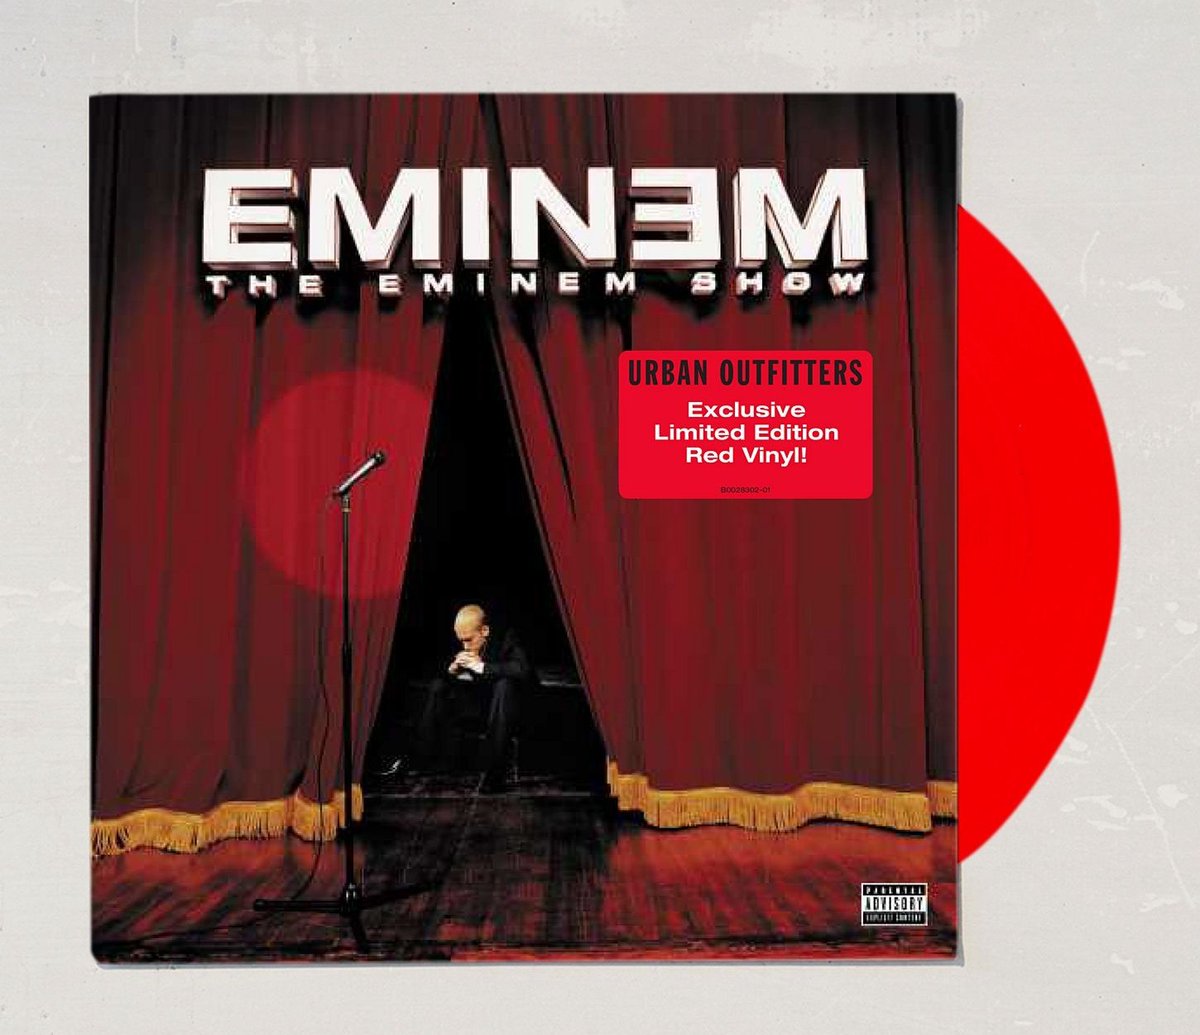 19亿次!! Eminem这张专辑在Spotify上播放数超过19亿次 